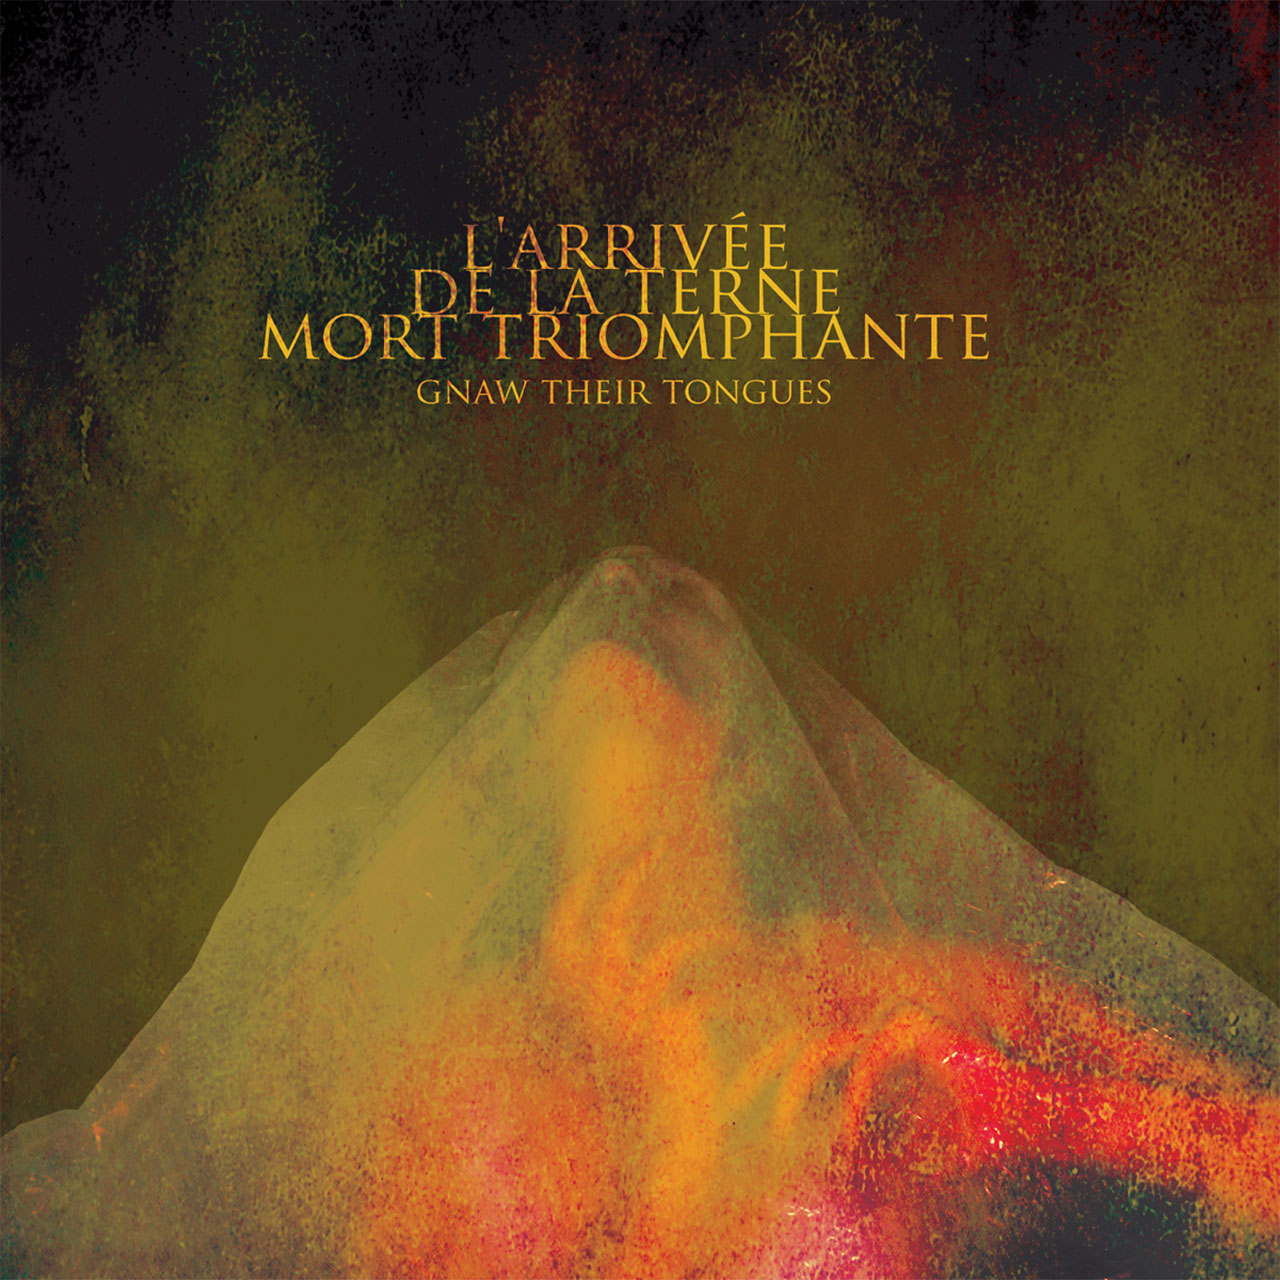 Gnaw Their Tongues - L'arrivee de la terne mort triomphante (CD)